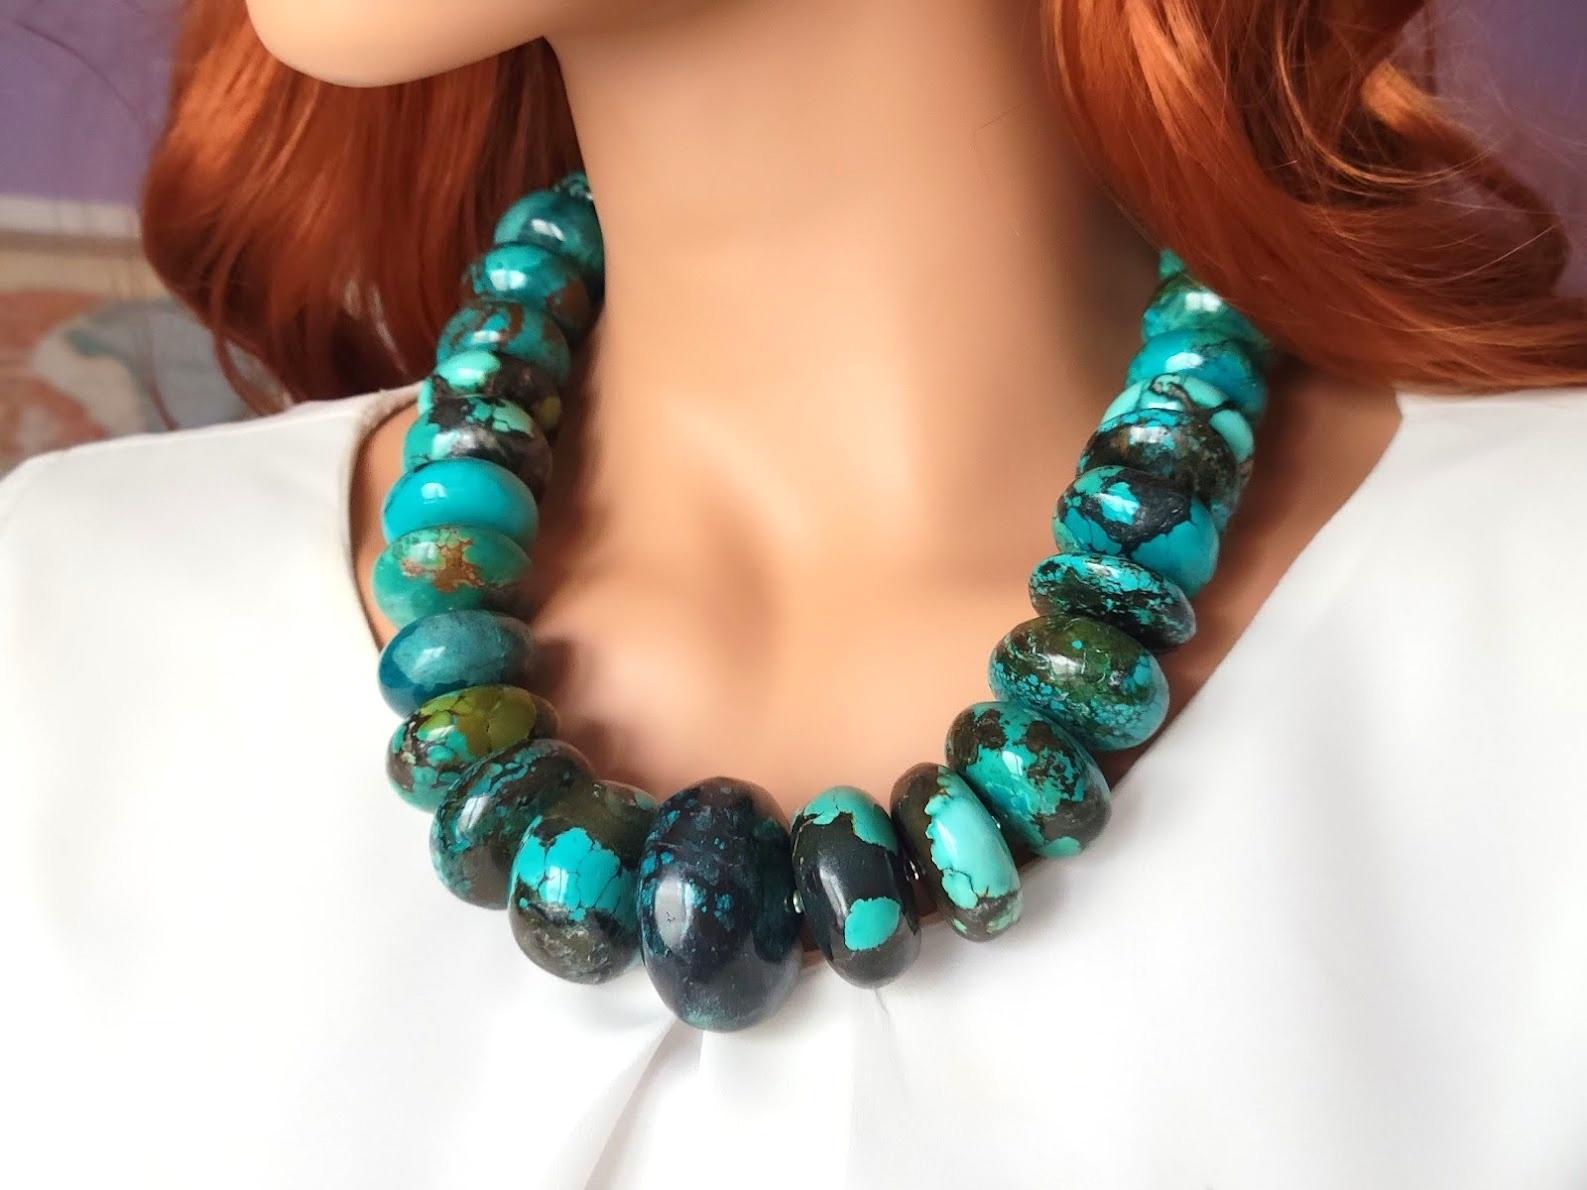 La longueur du collier est de 22 pouces (56 cm). La taille des perles de forme ronde varie de 16 mm à 40 mm.
La couleur de la turquoise varie d'une légère nuance de vert à un magnifique bleu foncé en passant par un bleu clair. Les perles de